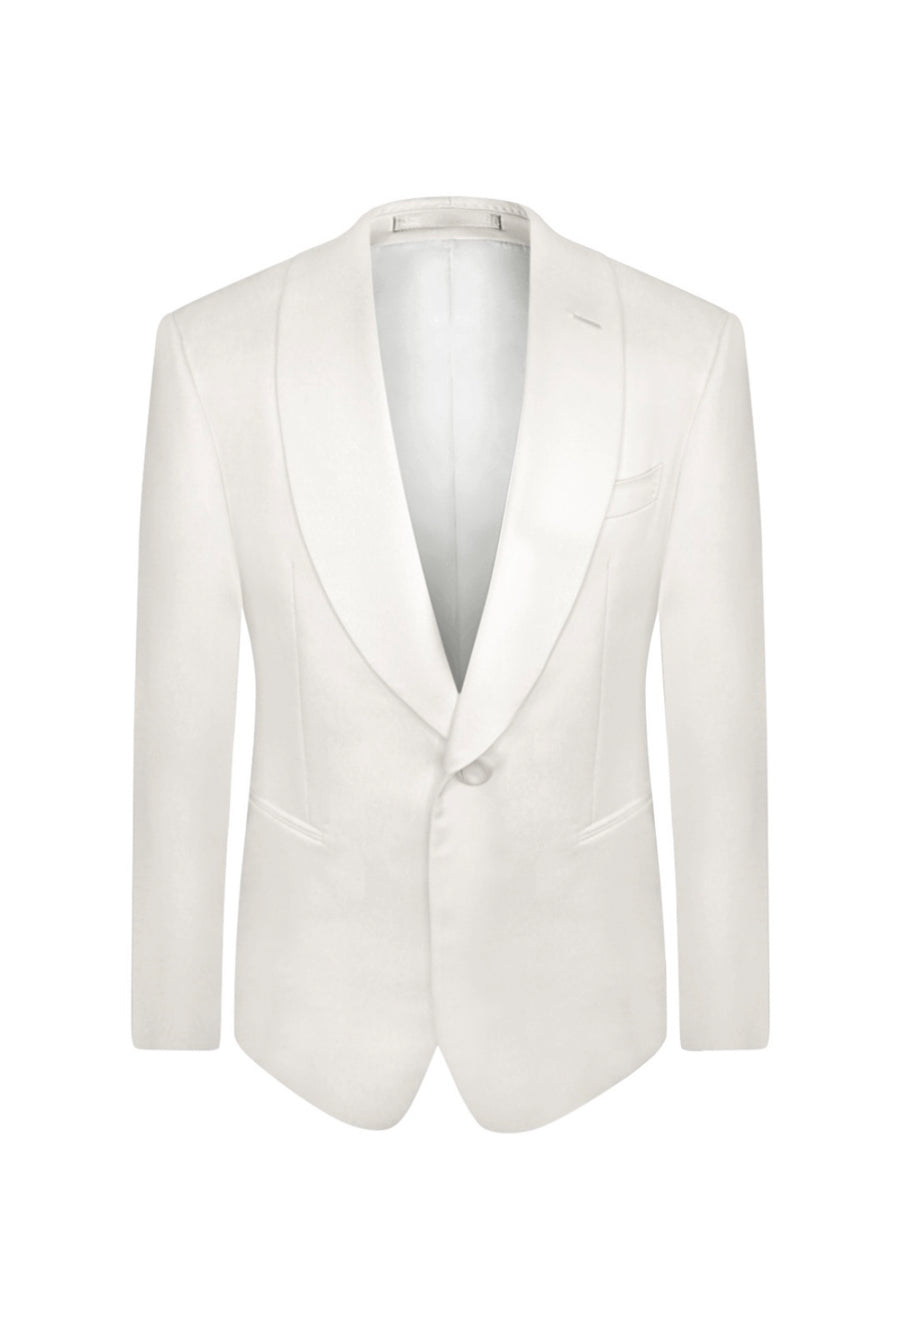 Ivory Slim Fit Shawl Lapel Tuxedo Jacket (Fabric Lapel)